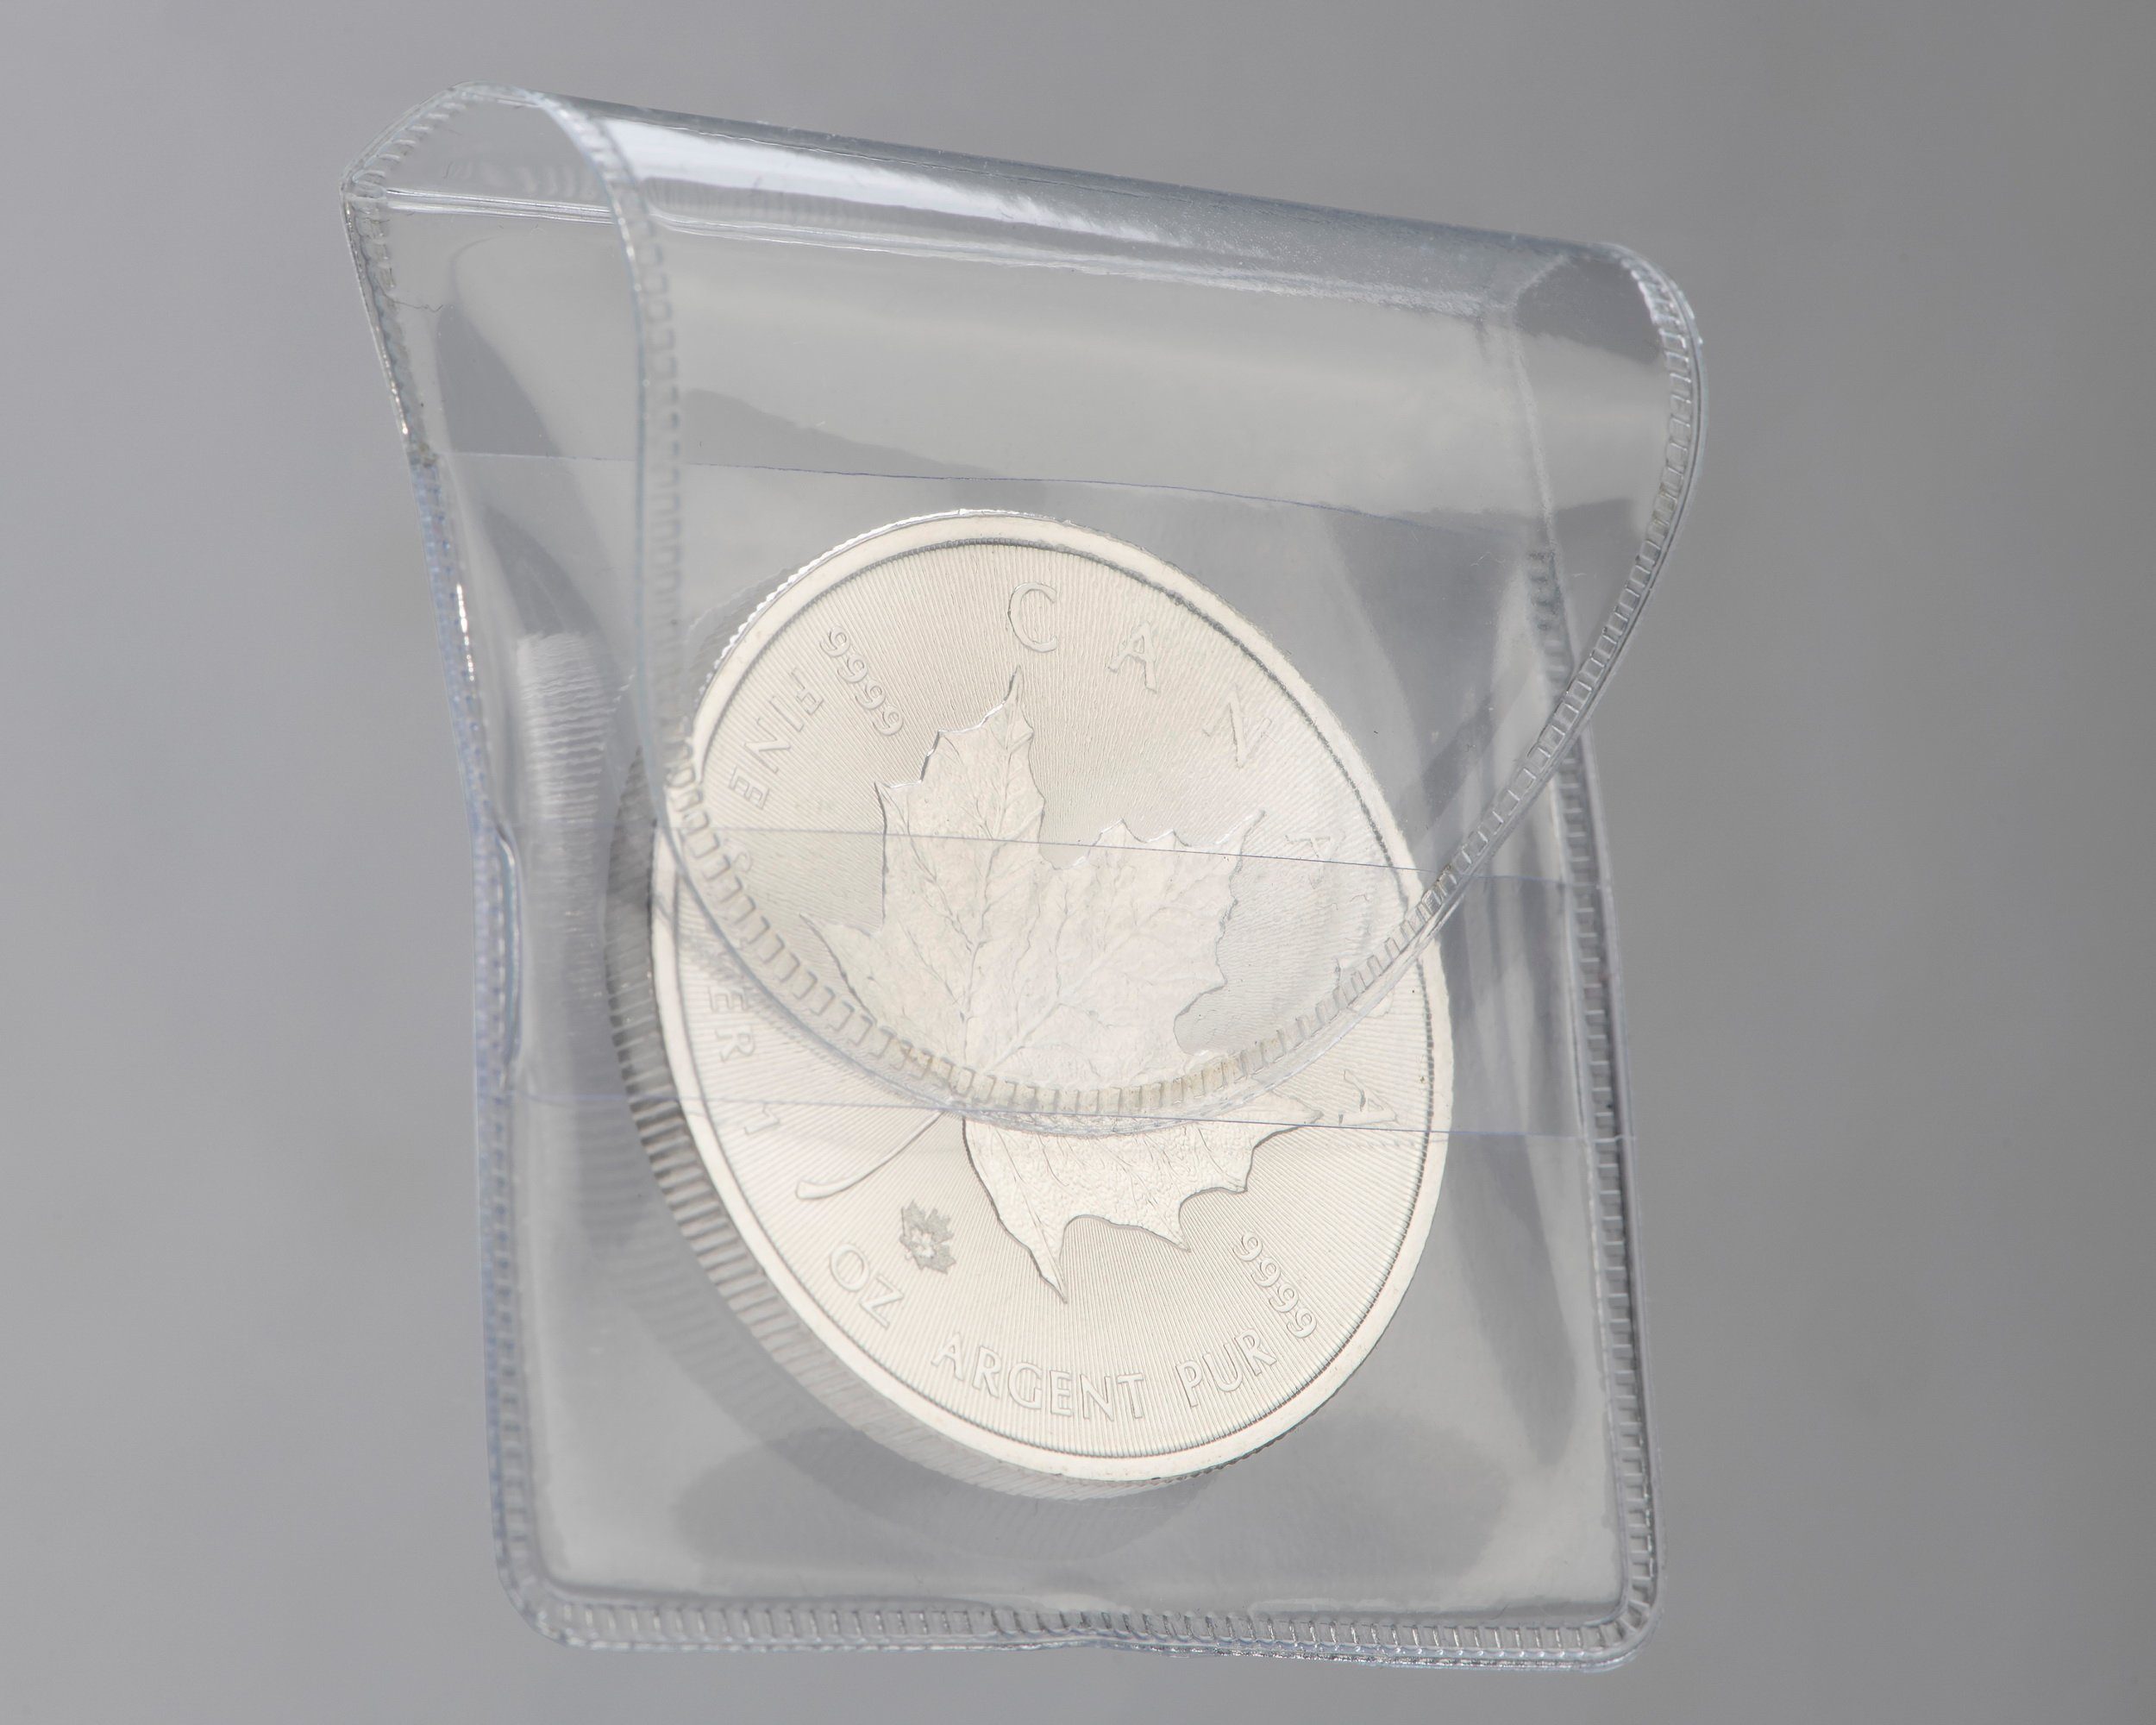 MC.Sammler Sammleretui MC.Sammler Münztaschen 50 x 50 mm für Münzen bis 46mm Durchmesser (50 St), 50 STK